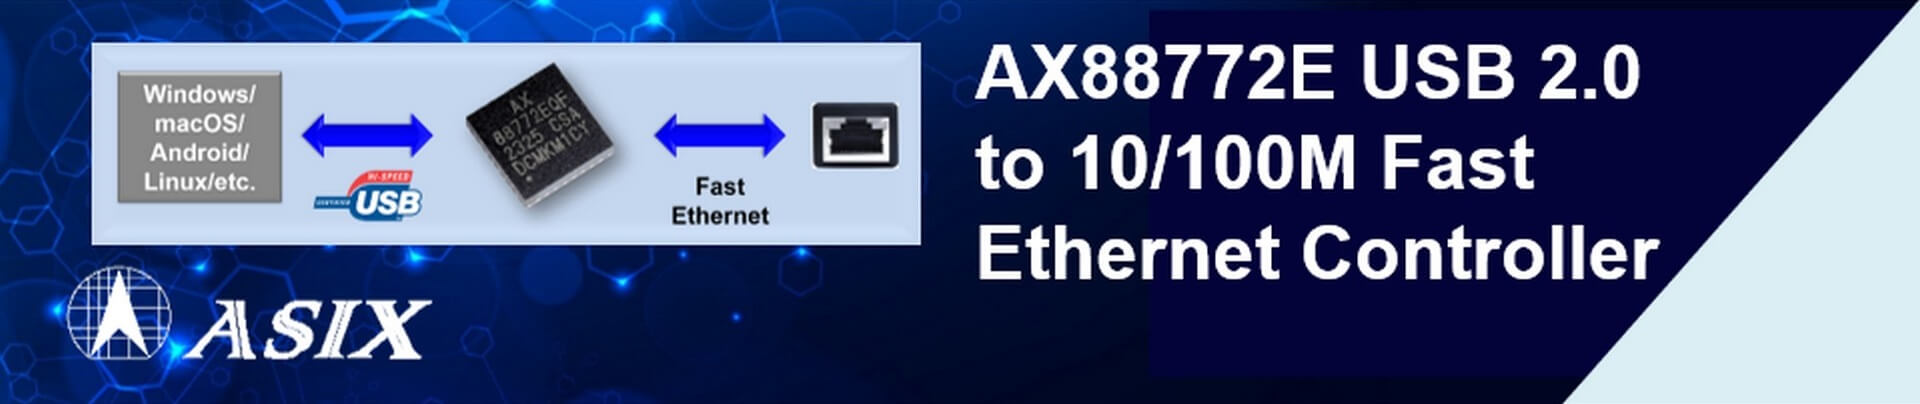 亚信推出低功耗AX88772E免驱动USB 2.0转百兆以太网芯片